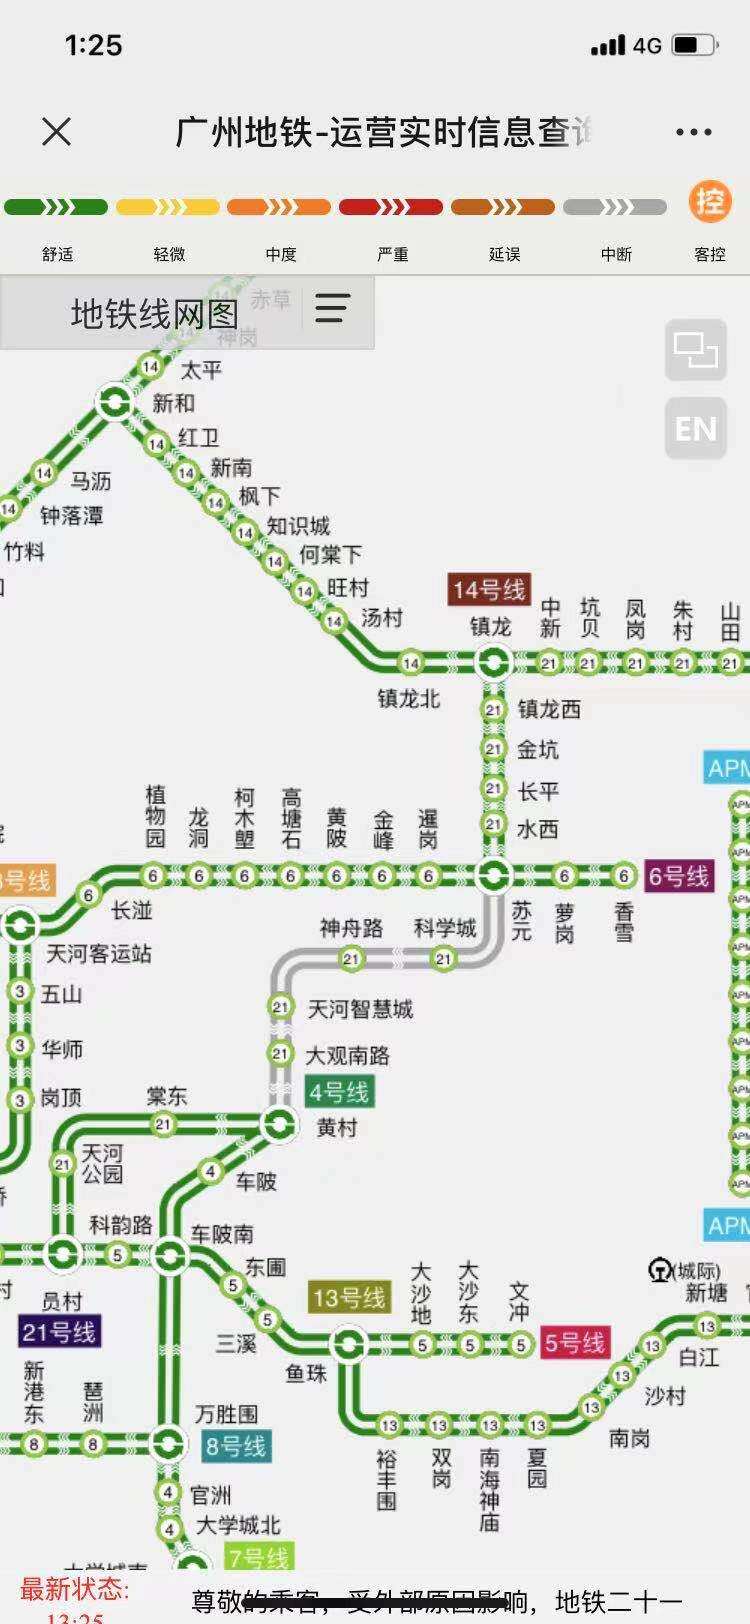 广州地铁21号线神州路站进水苏元至黄村段停止运营